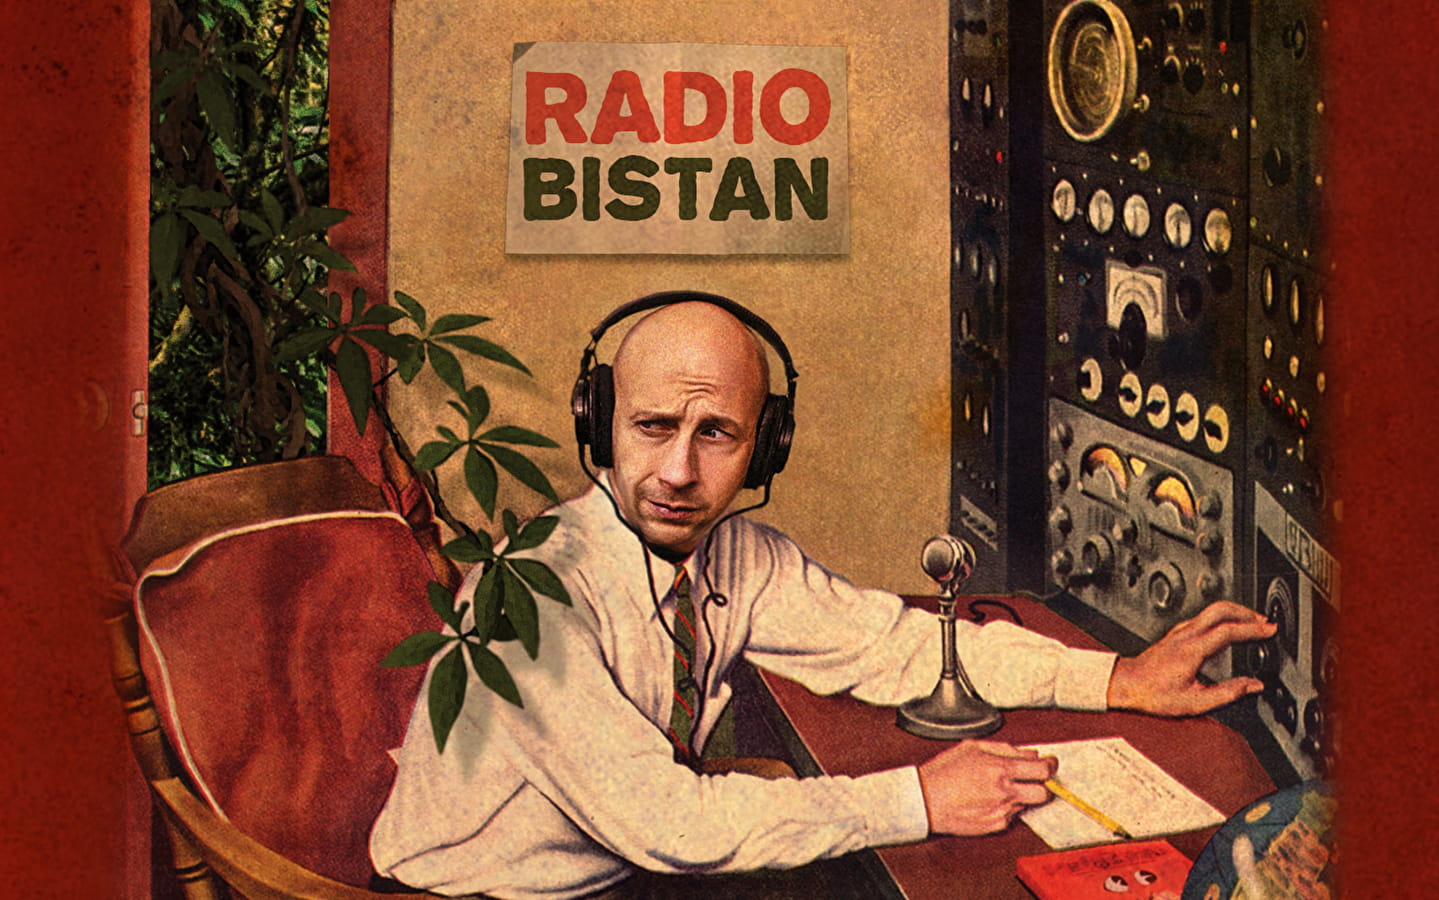 (Radio Bistan) Théâtre du Grabuge